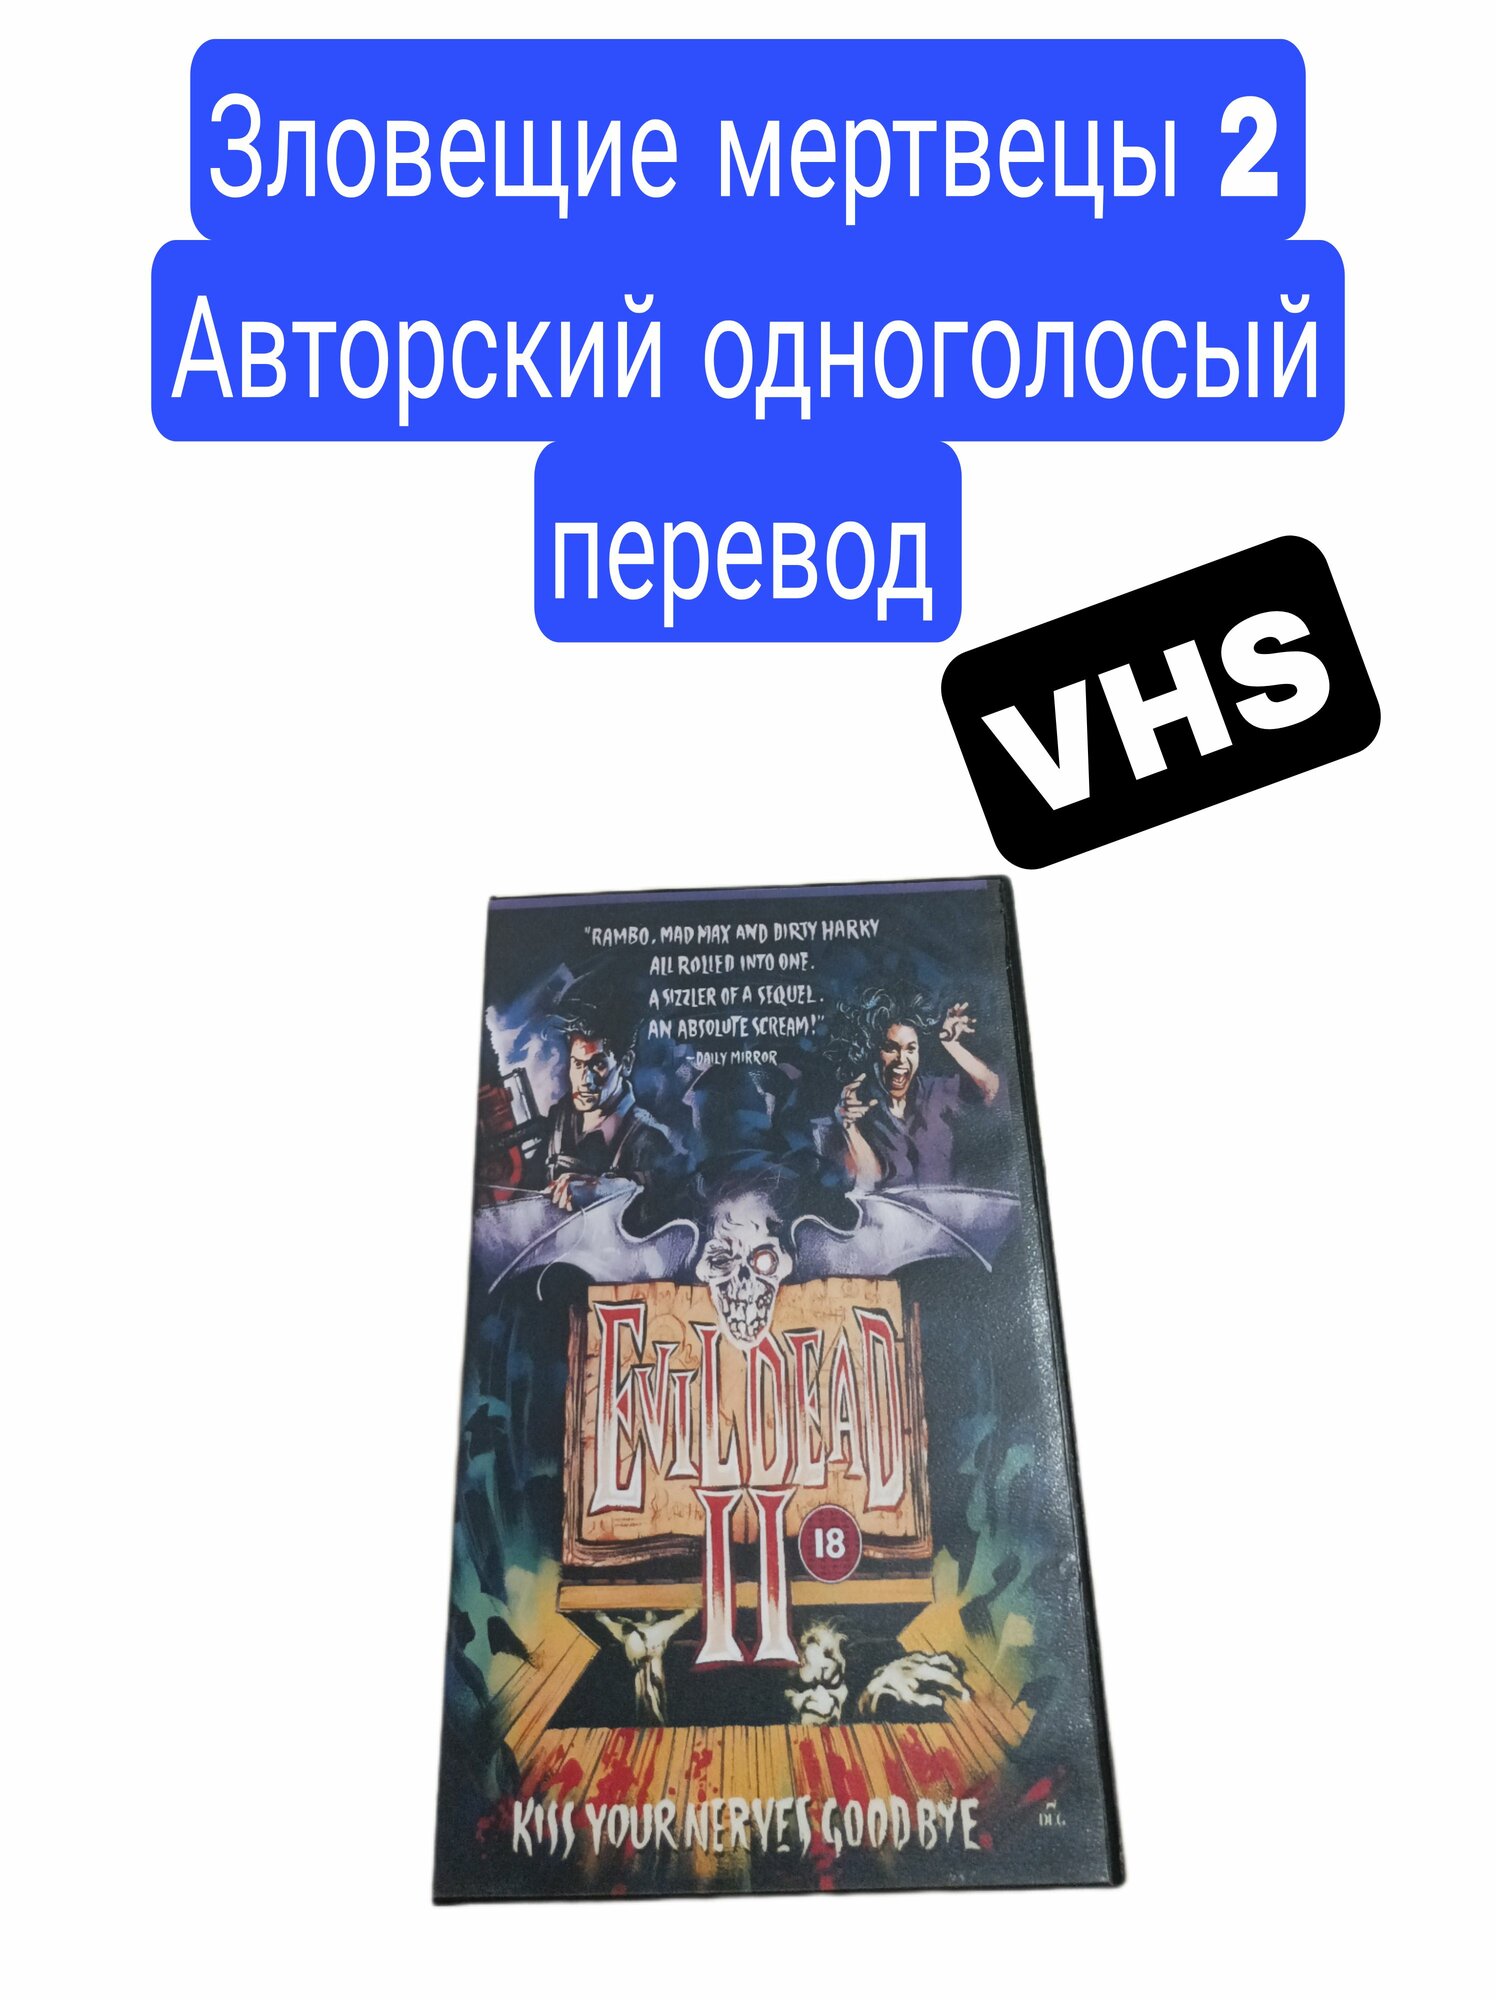 Зловещие мертвецы 2 Видеокассета VHS Михалев